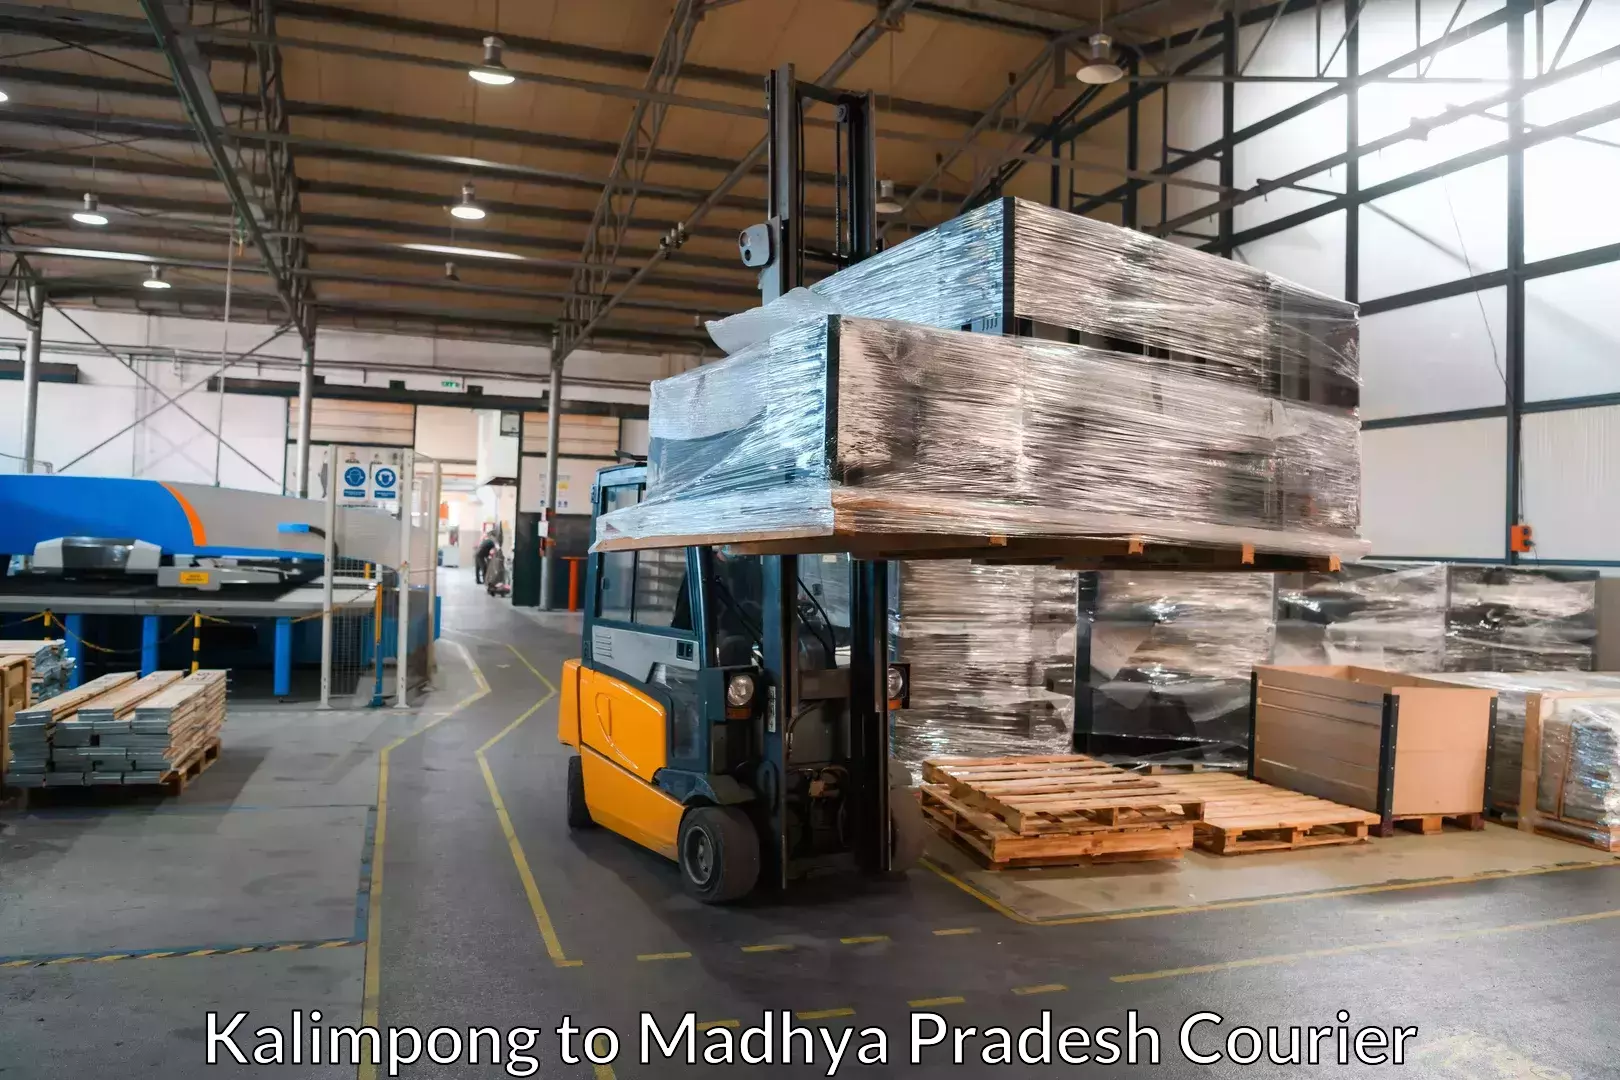 Furniture transport experts Kalimpong to Ratlam